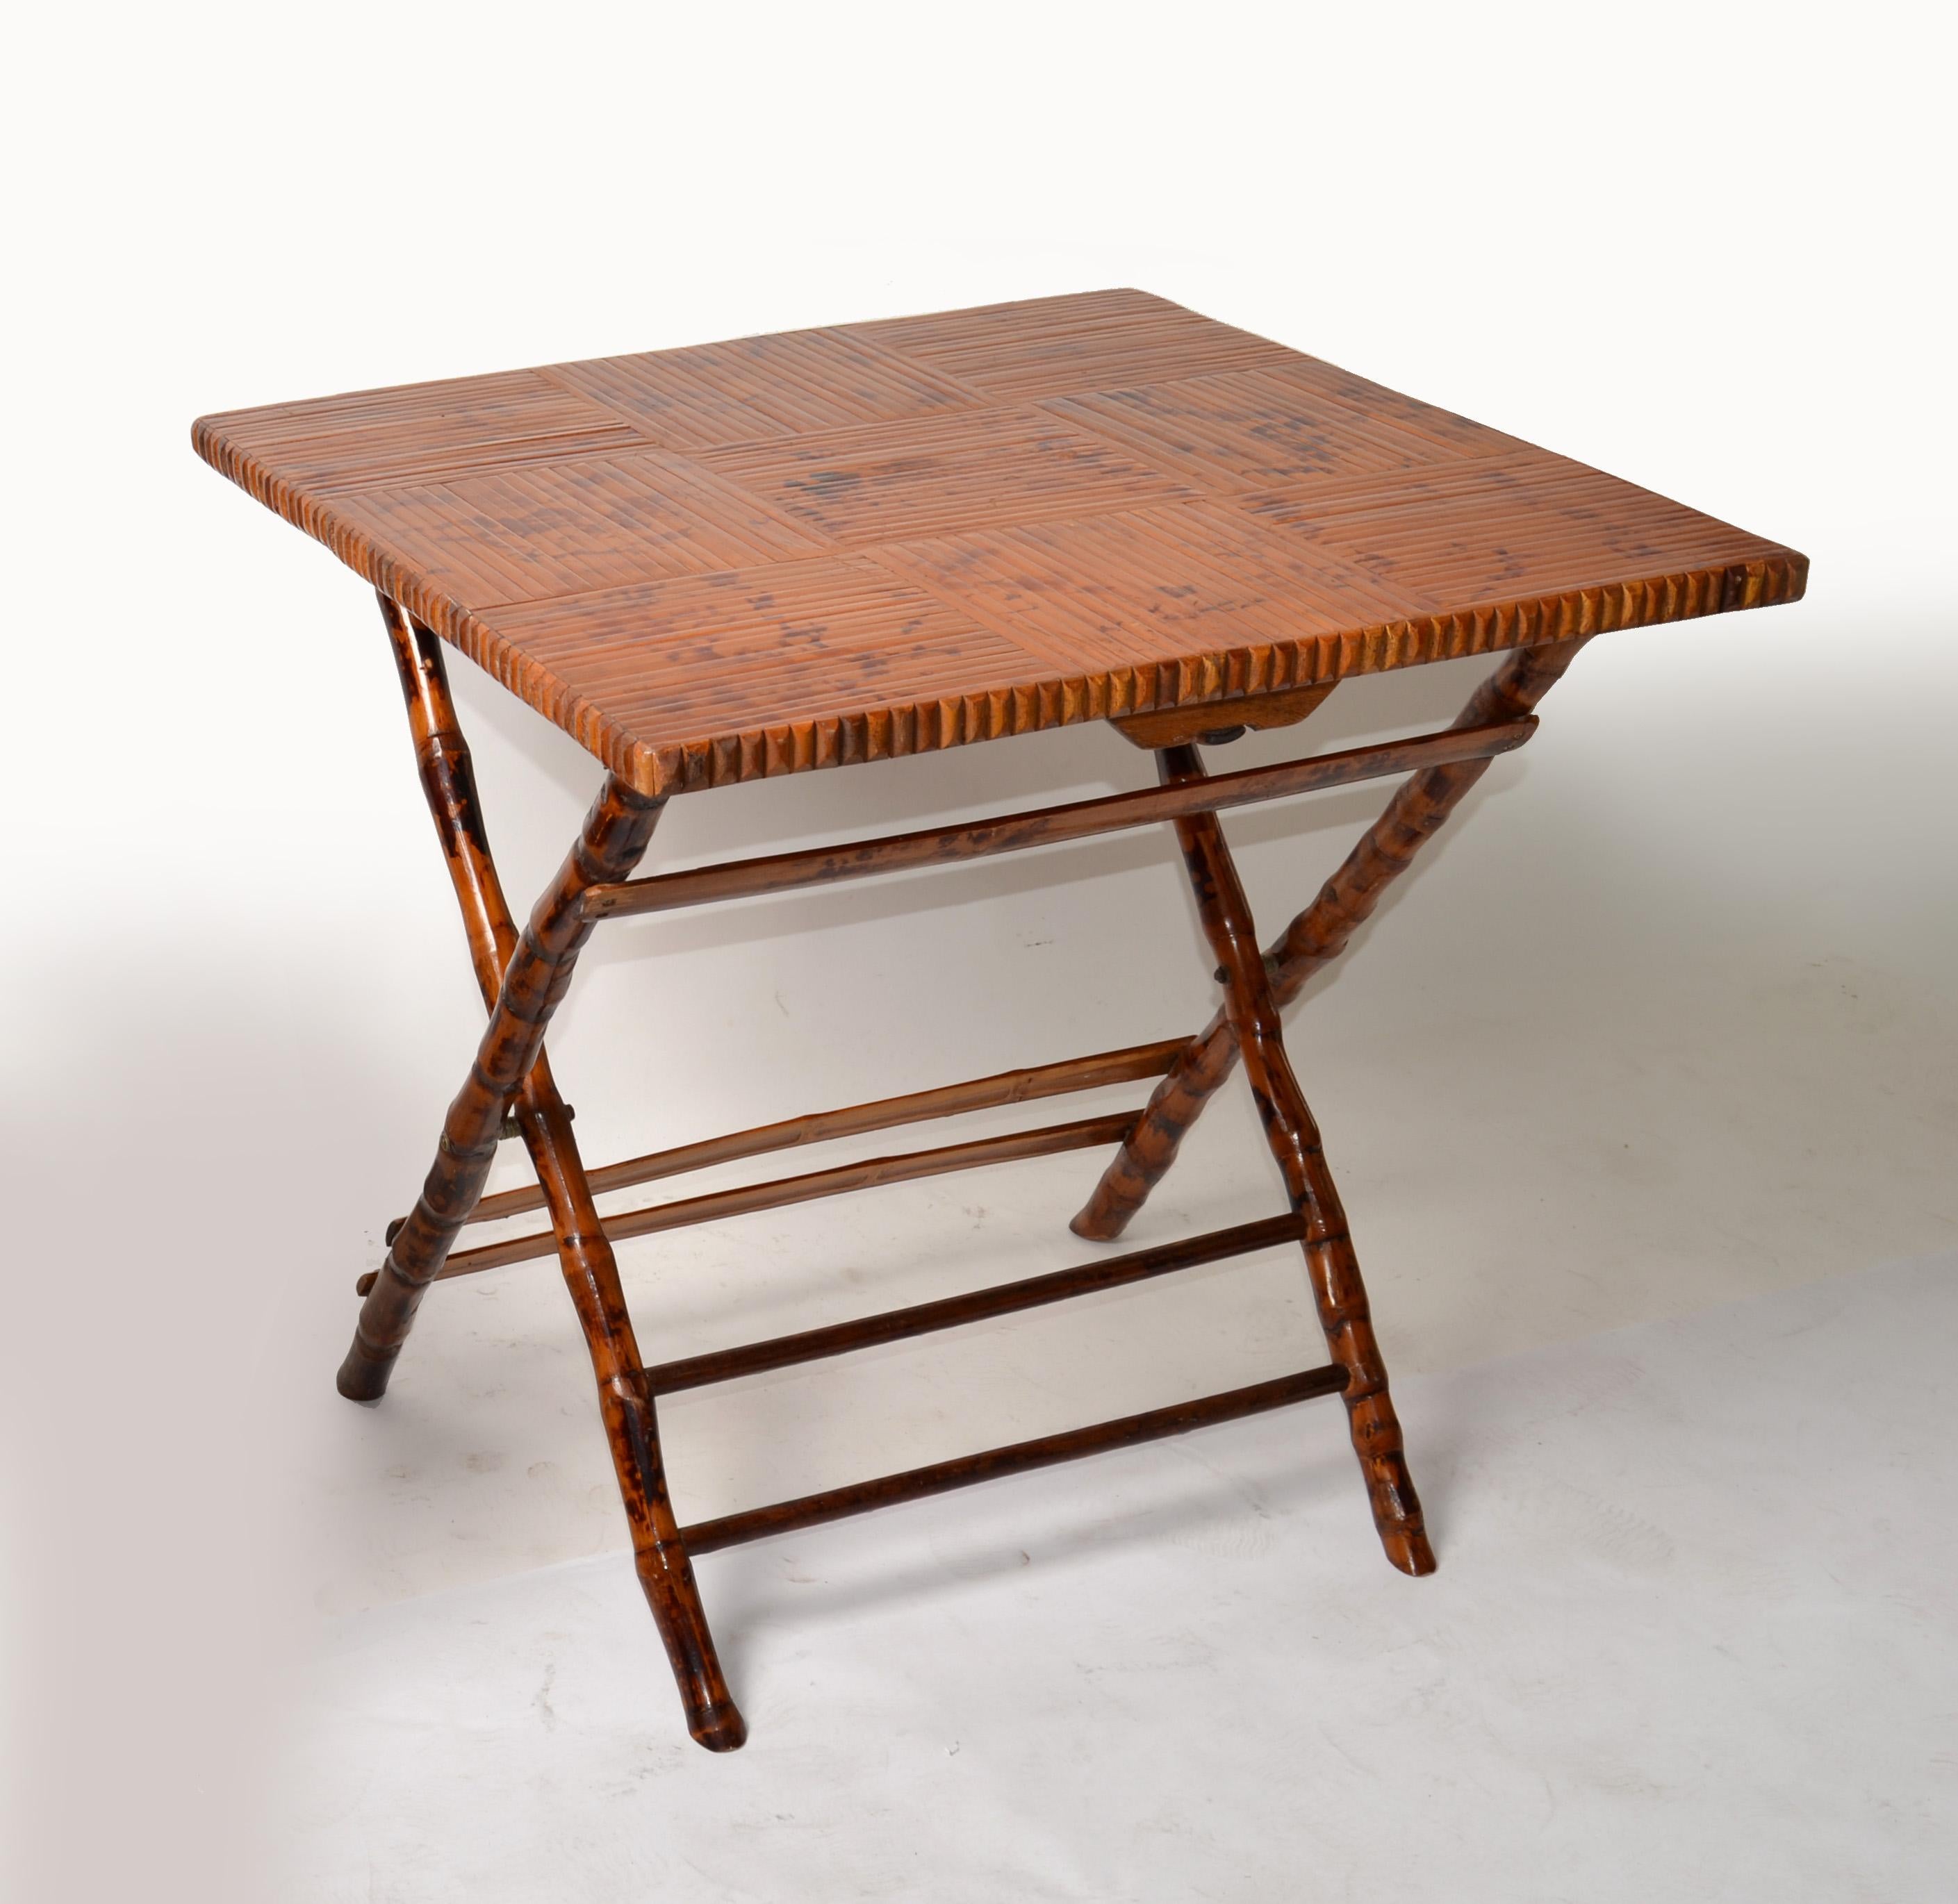 1970 Mid-Century Modern Boho Chic fait à la main en bambou tigré carré Table de bistro, de jeu ou de carte.
Base en X décorative et robuste.
La table est facile à plier et utilise un petit espace de rangement.
Dimensions pliées : 38.75 x 4 x 28